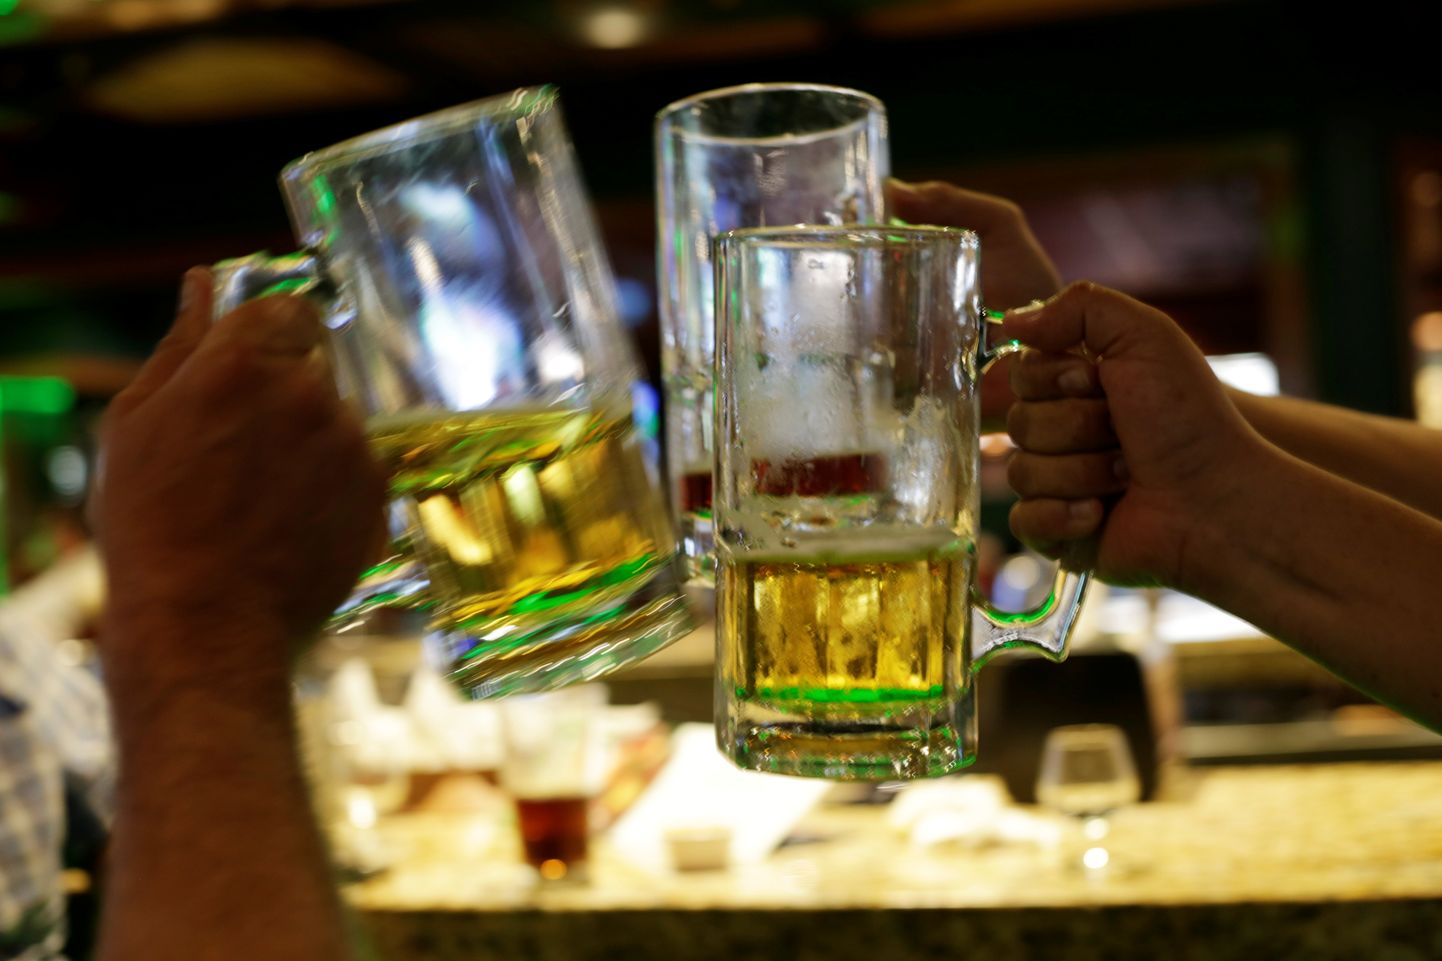 Mehhiko võimude kehtestatud piirangud seadusliku alkoholi tarbimisele on pannud inimesed tarbima ebaseaduslikku ja sageli ebapuhast alkoholi.